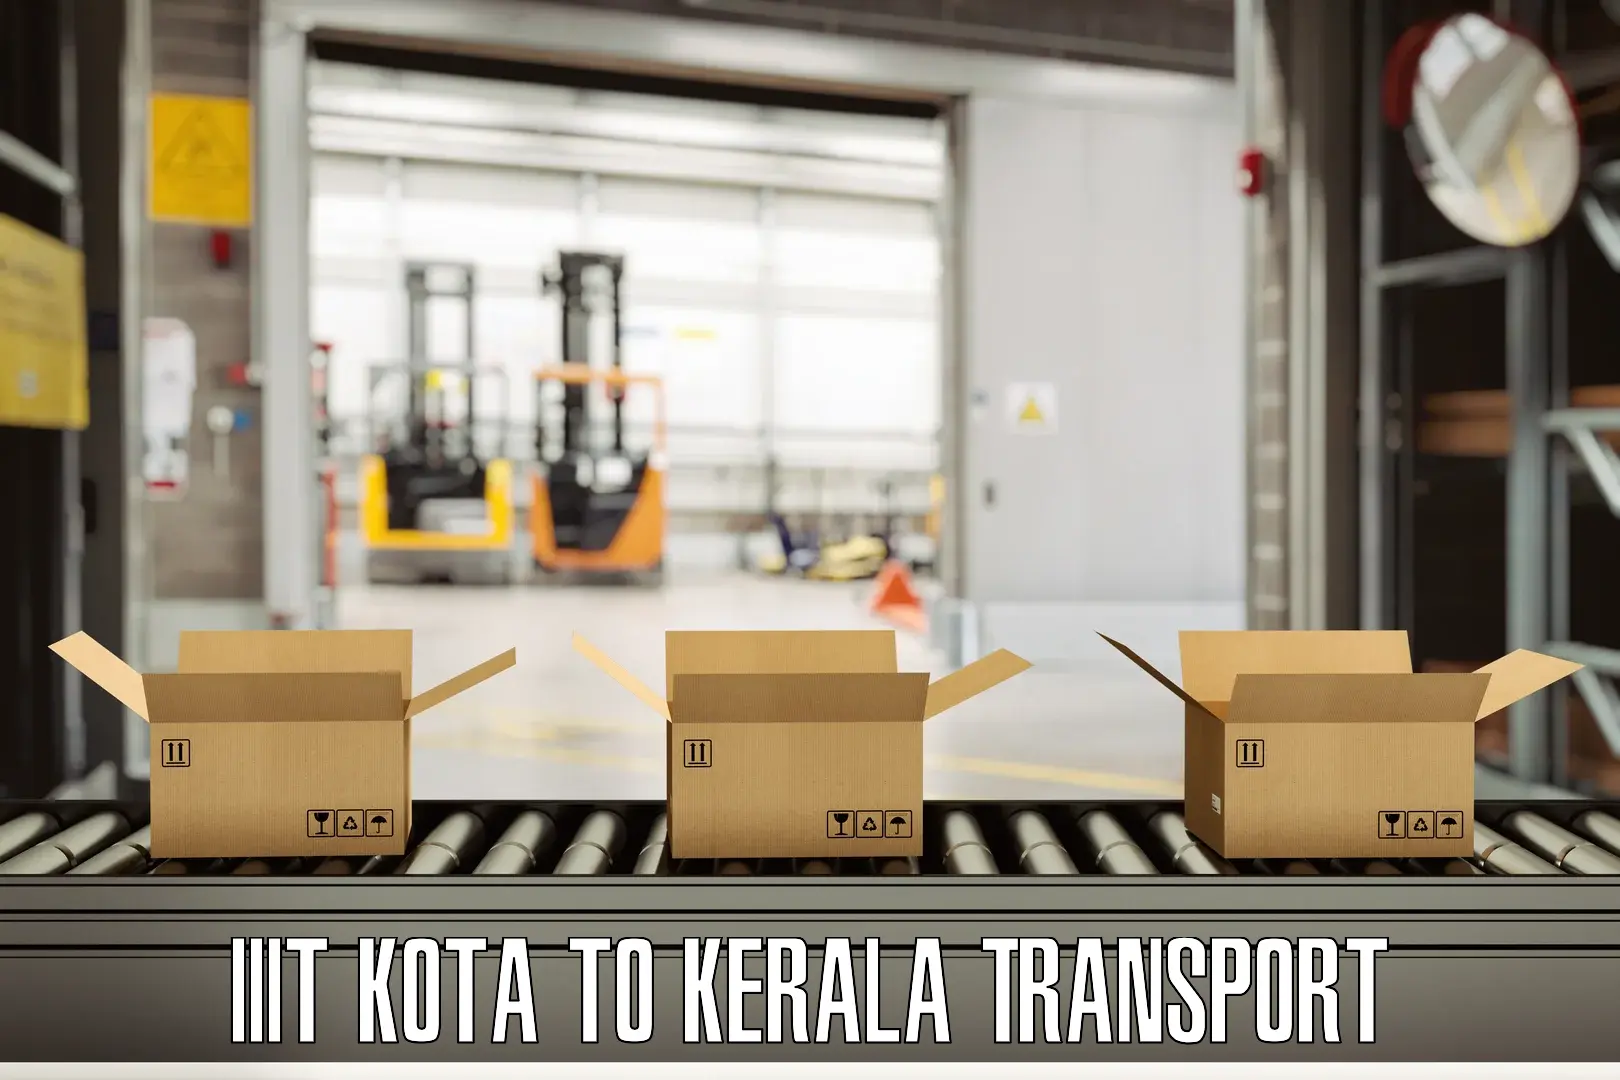 Container transportation services IIIT Kota to Idukki